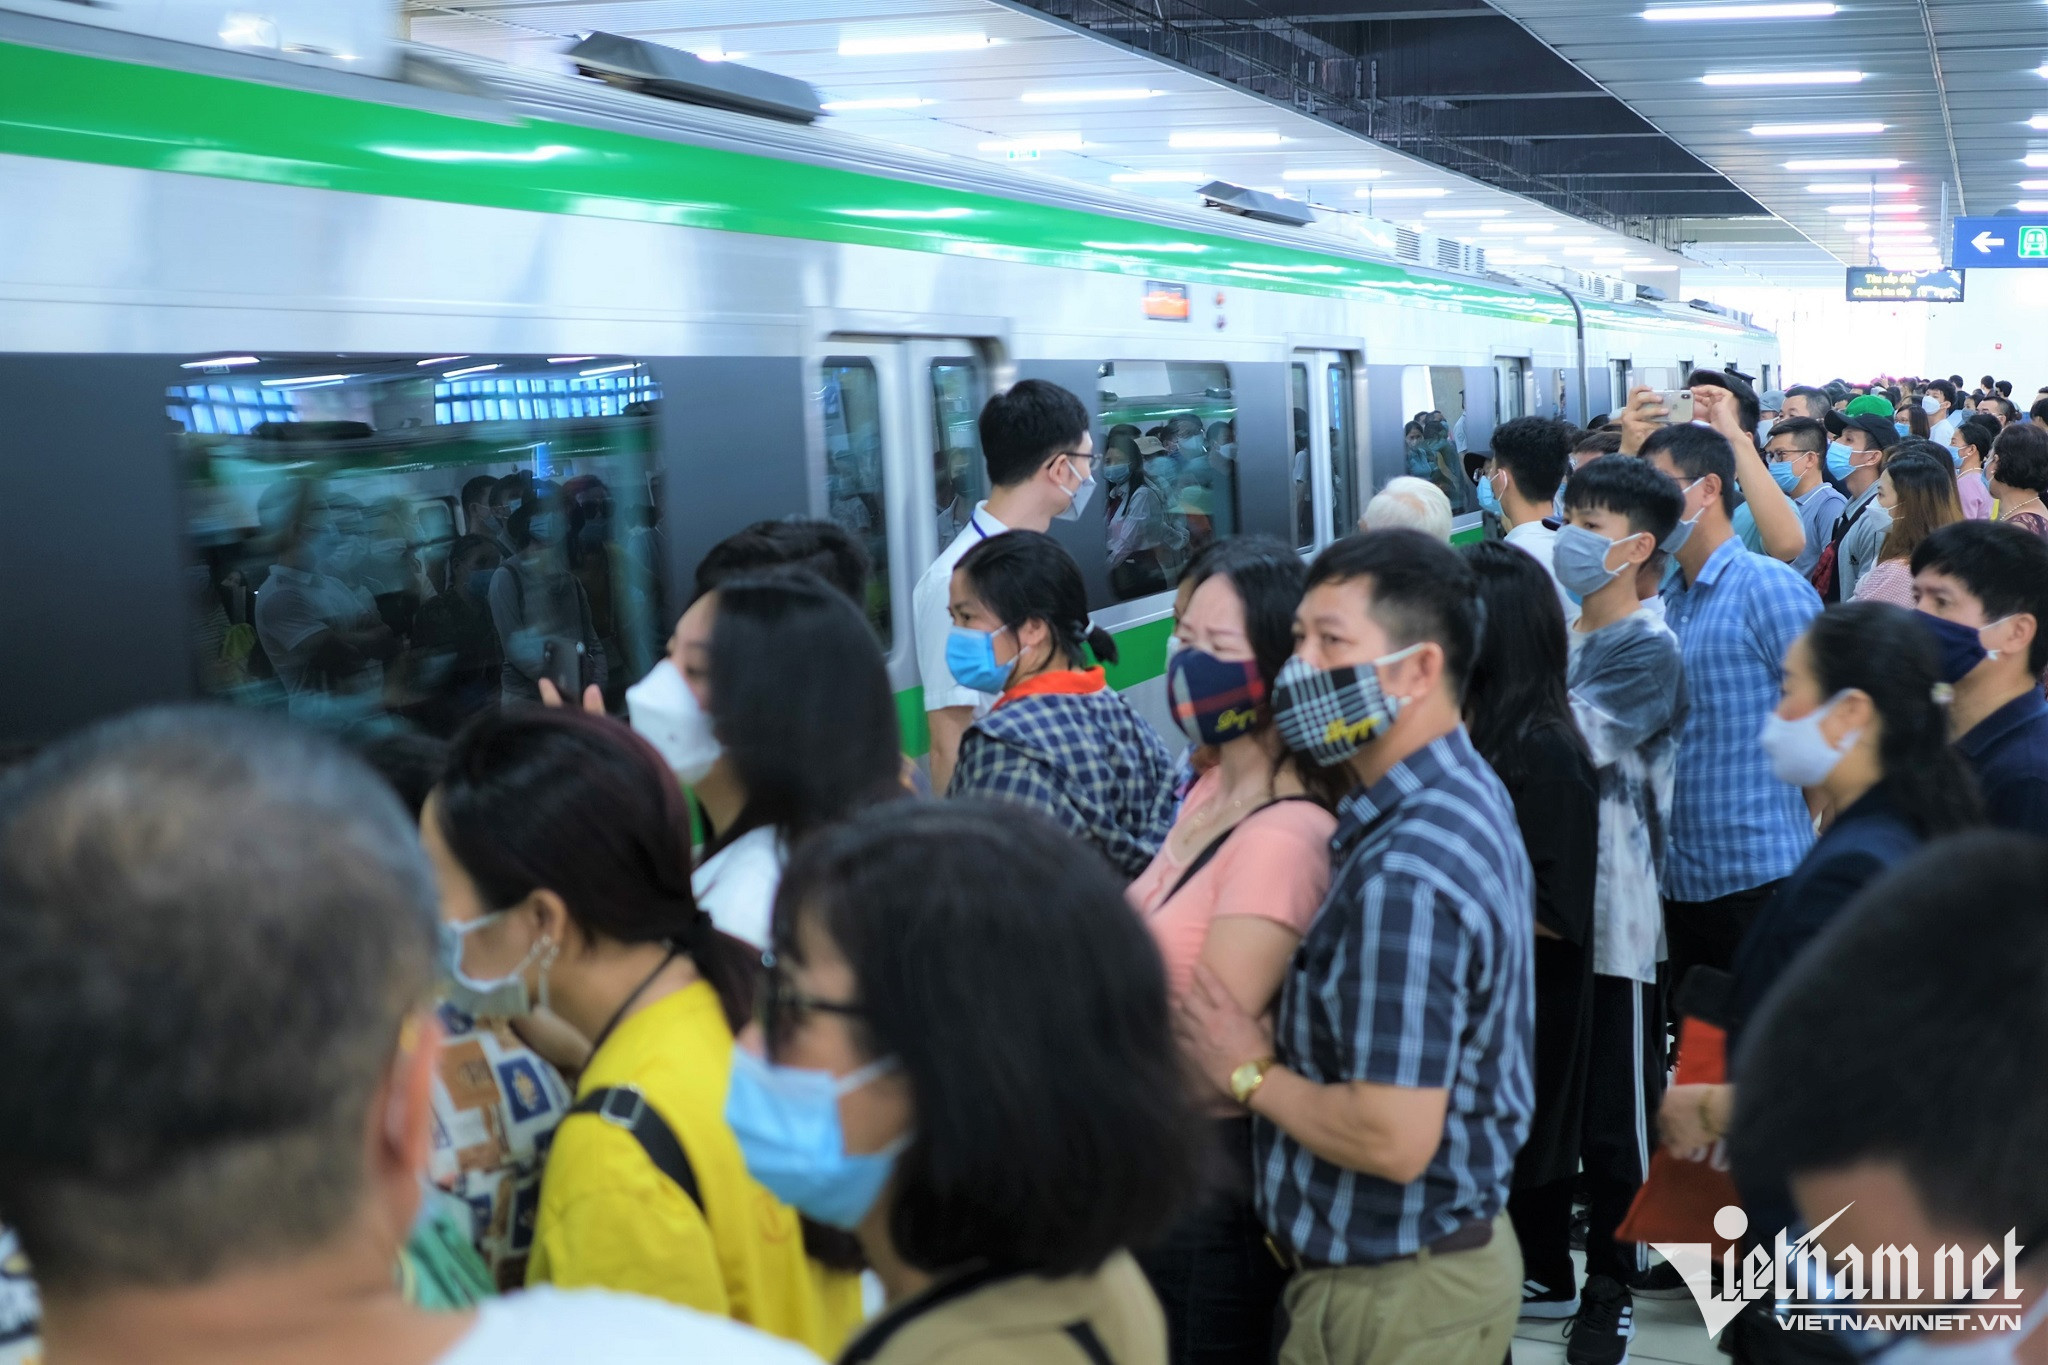 Thống kê của Hanoi Metro, trong 15 ngày đưa vào vận hành miễn phí, (6/11- 20/11/2021) tàu đã chở 350.000 lượt hành khách. Ngày thường có lượng khách đi lại từ 16.000-20.000 lượt, còn với ngày cuối tuần thì từ 25.000-54.000 khách/ngày.